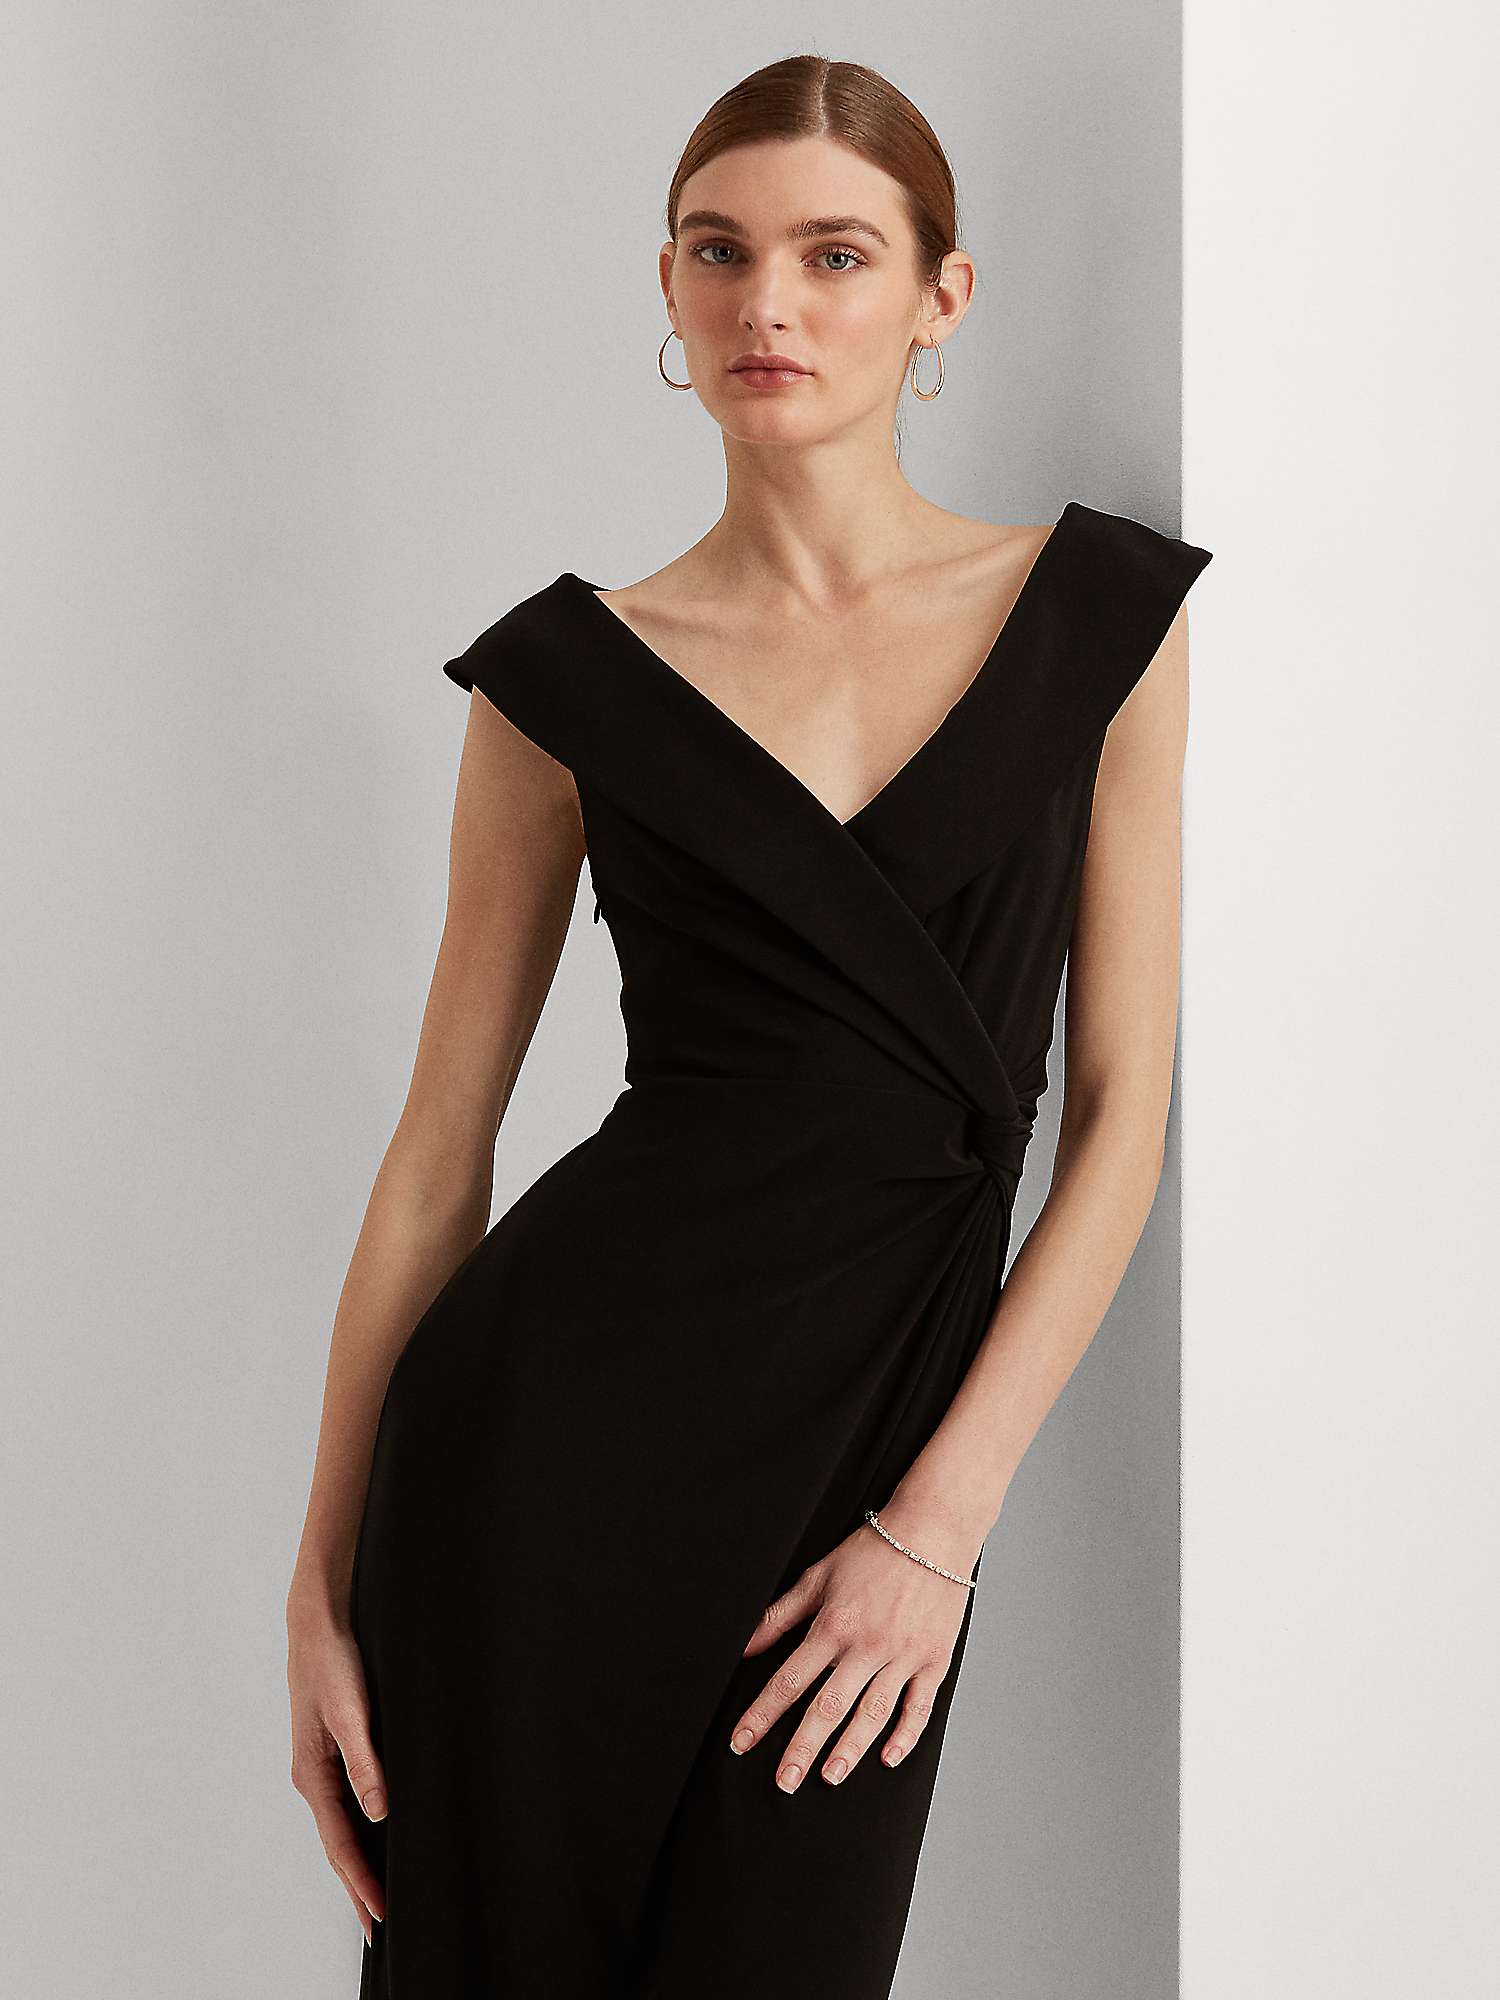 Buy Lauren Ralph Lauren Leonidas Floor Length Column Gown Online at johnlewis.com